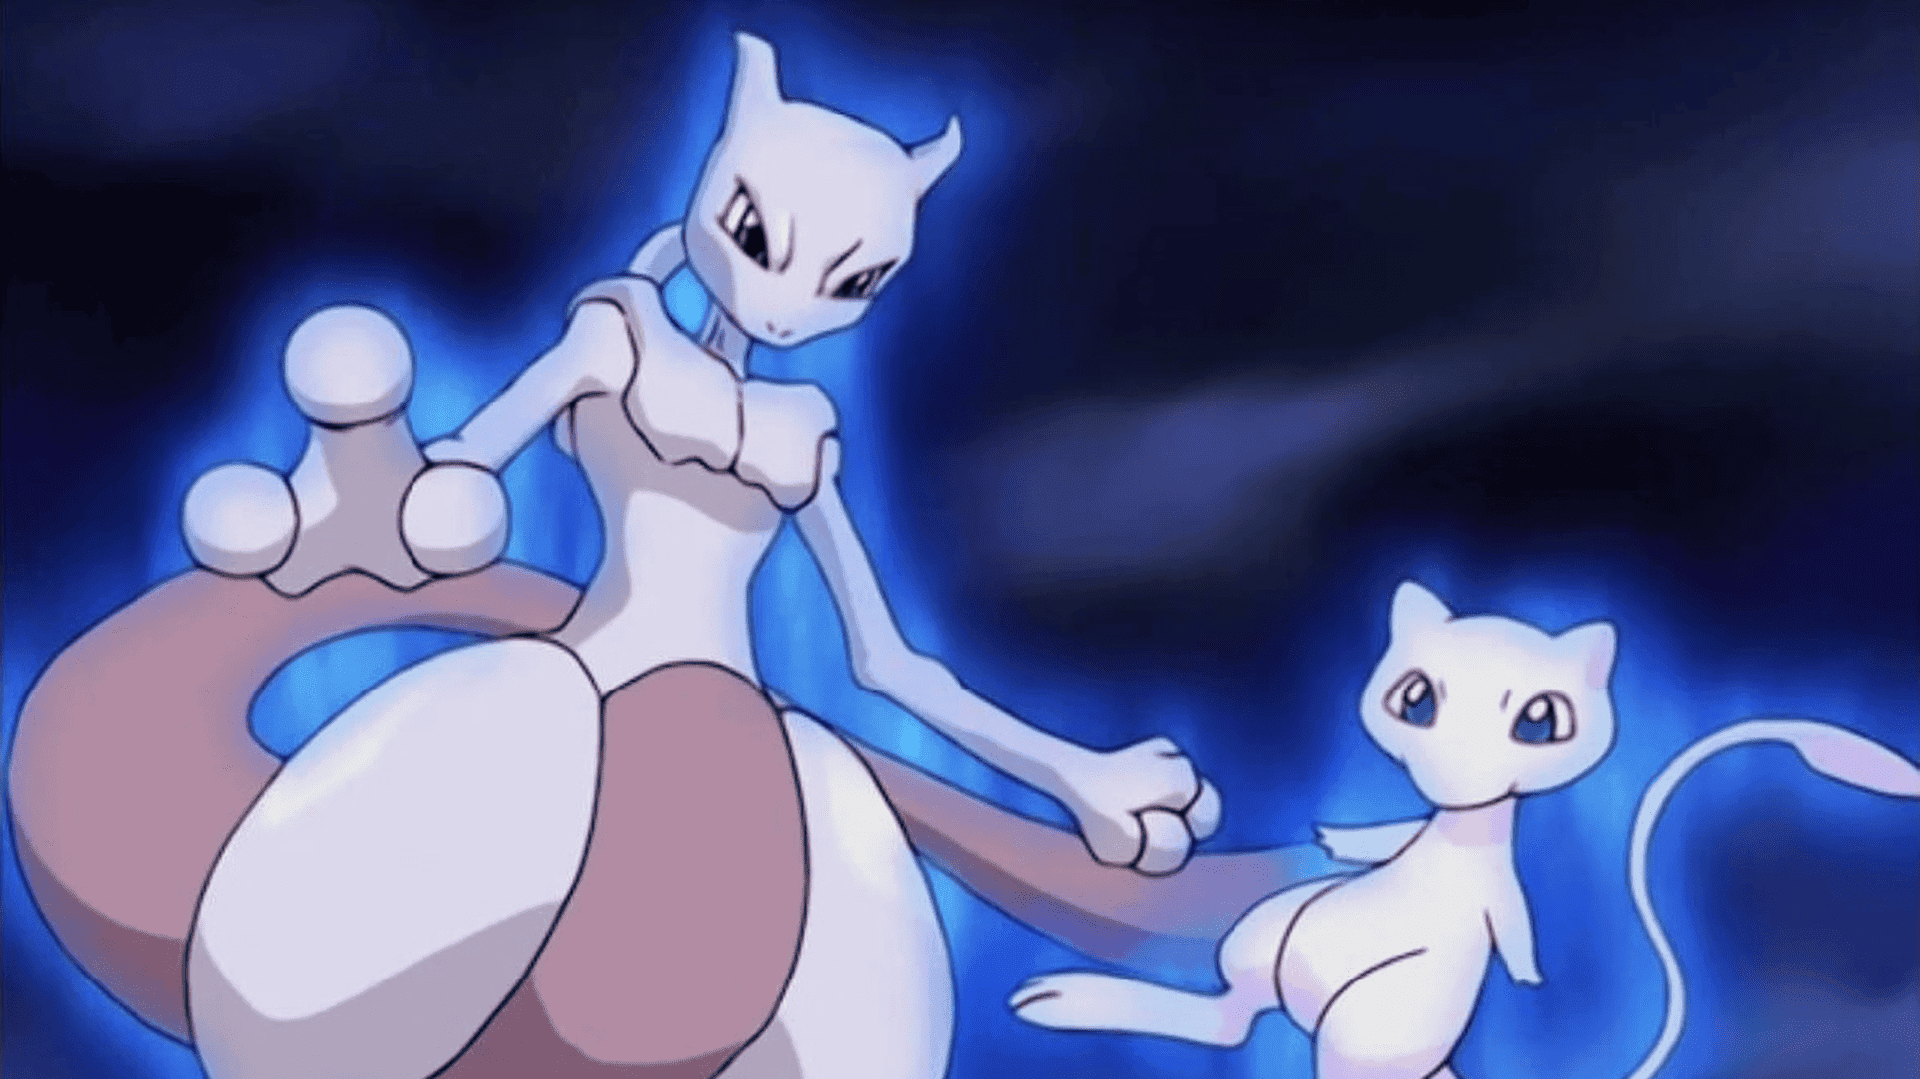 Pokémon GO: Jugador planea venganza después de que un “amigo” purificara a su Mewtwo sin consentimiento